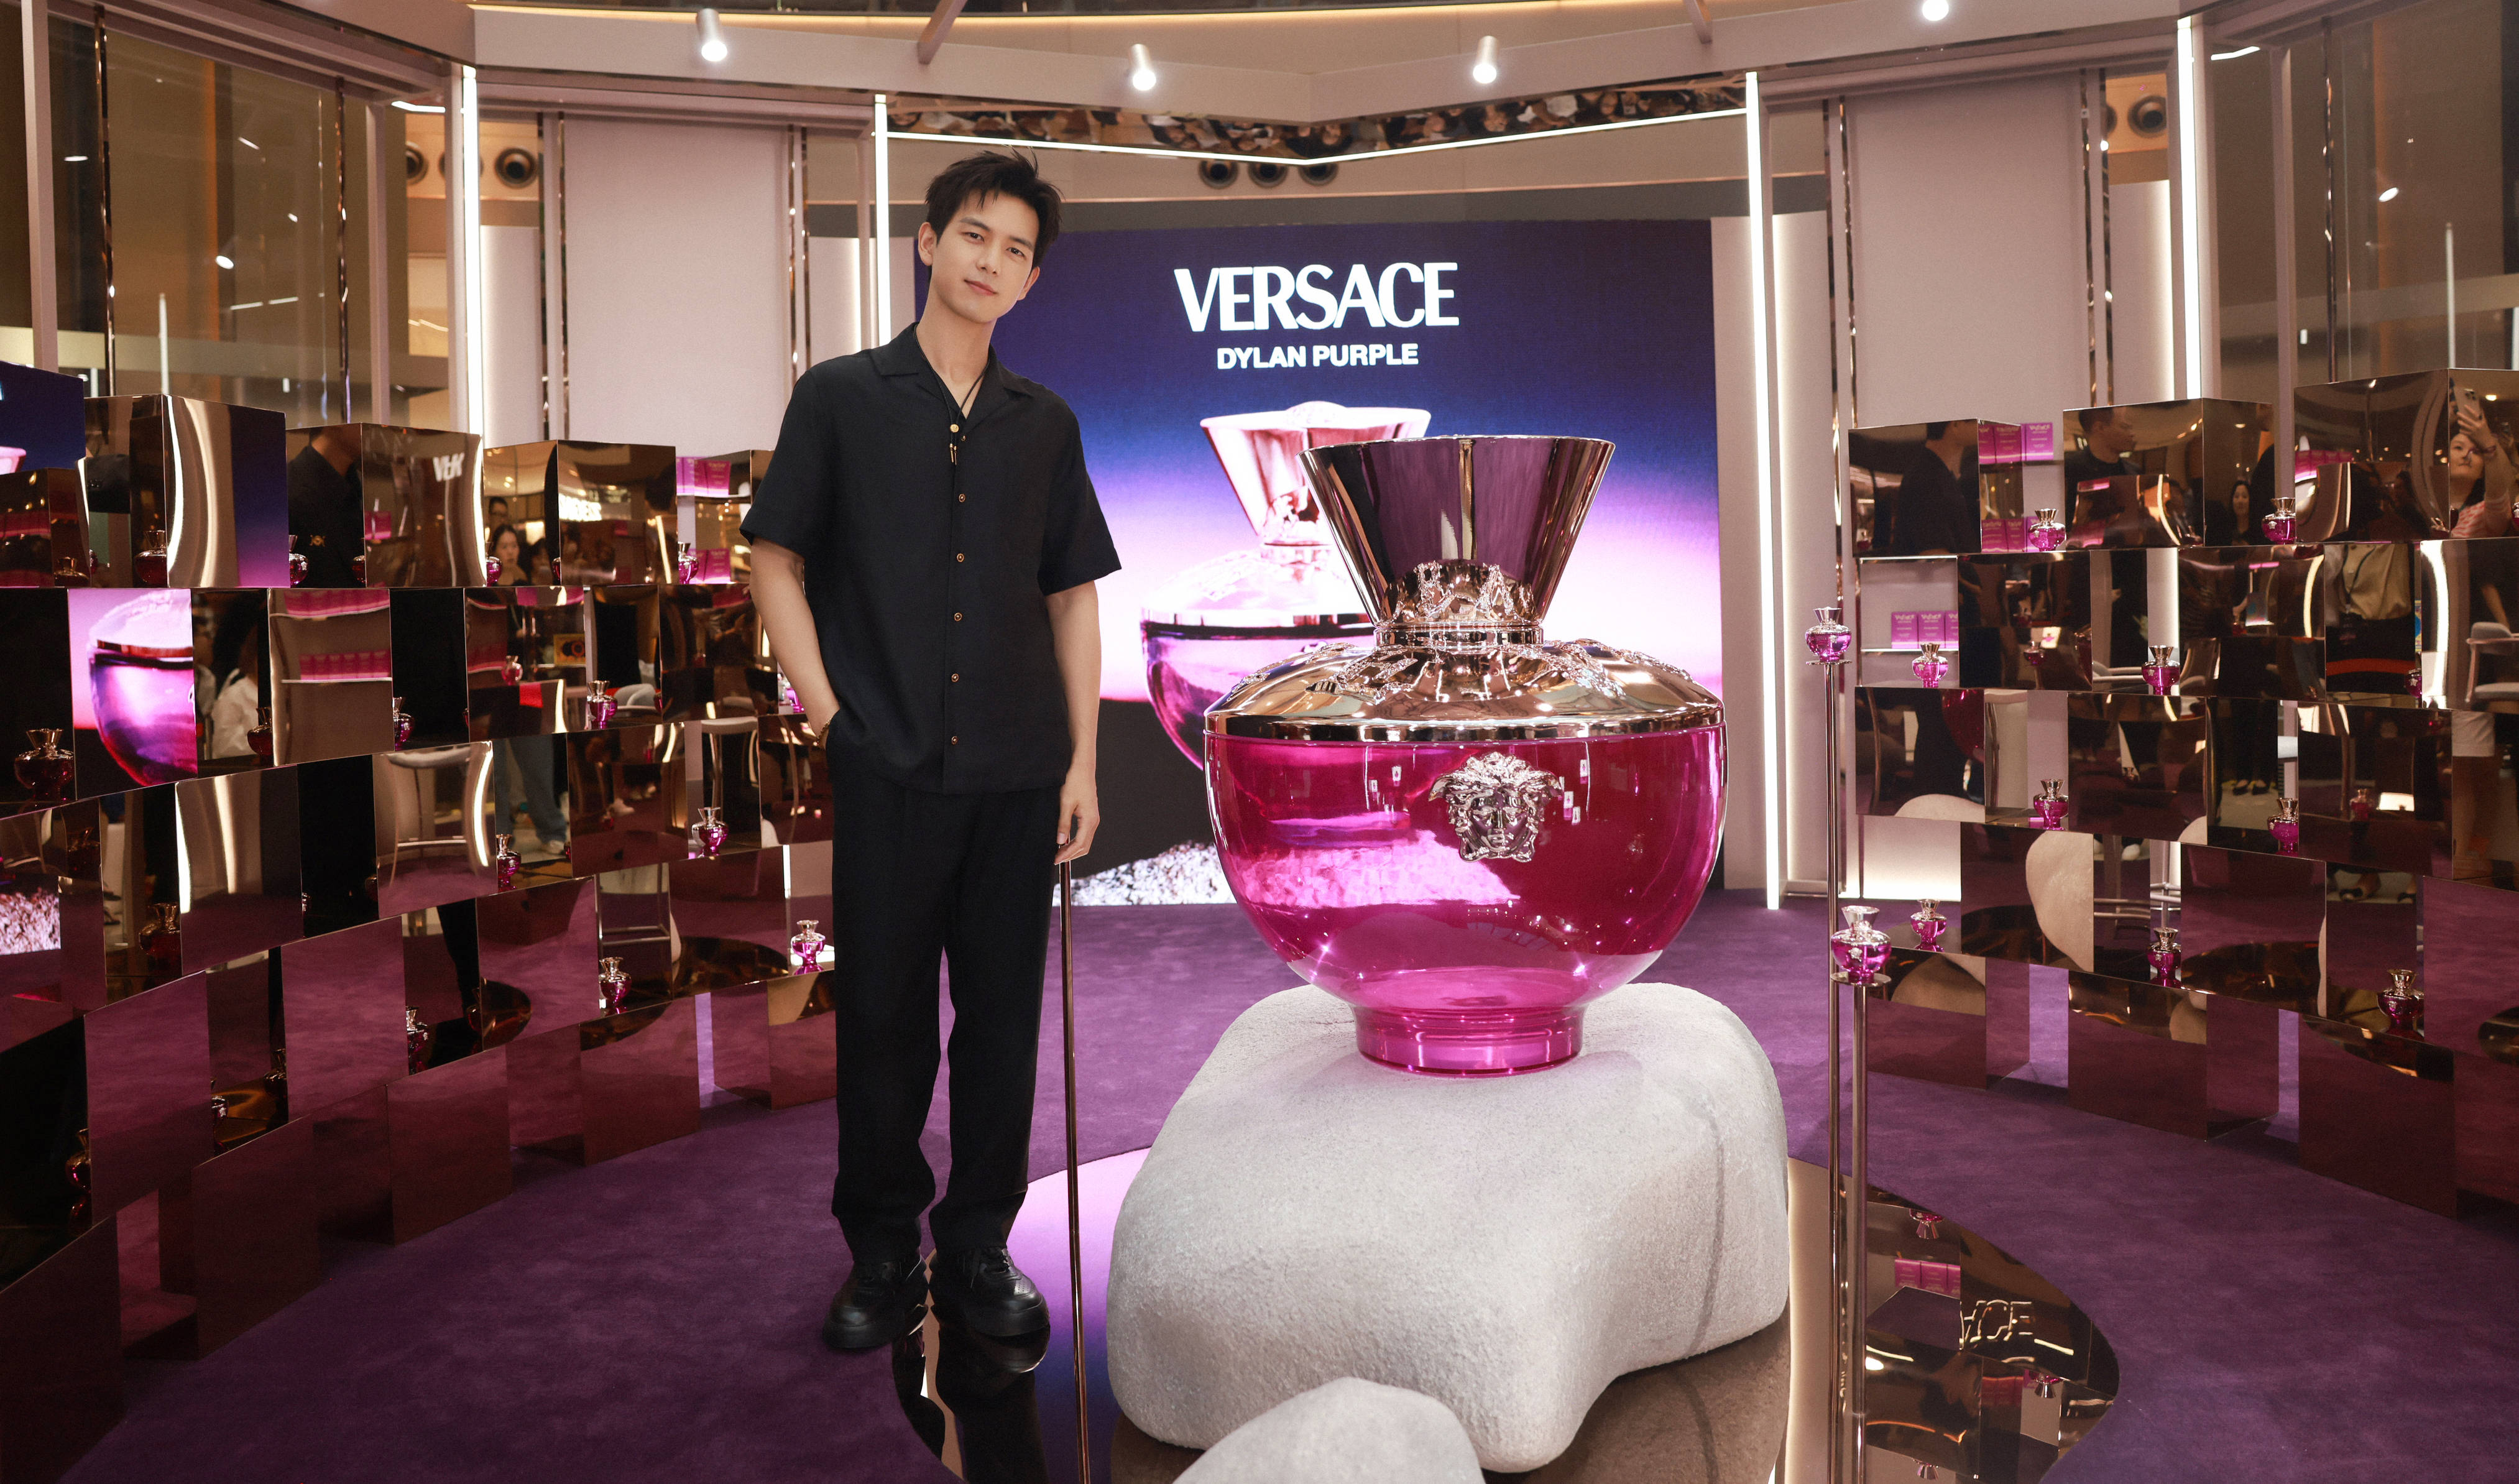 在此次新品见面会上,versace范思哲全球香水代言人李现亮相现场,其